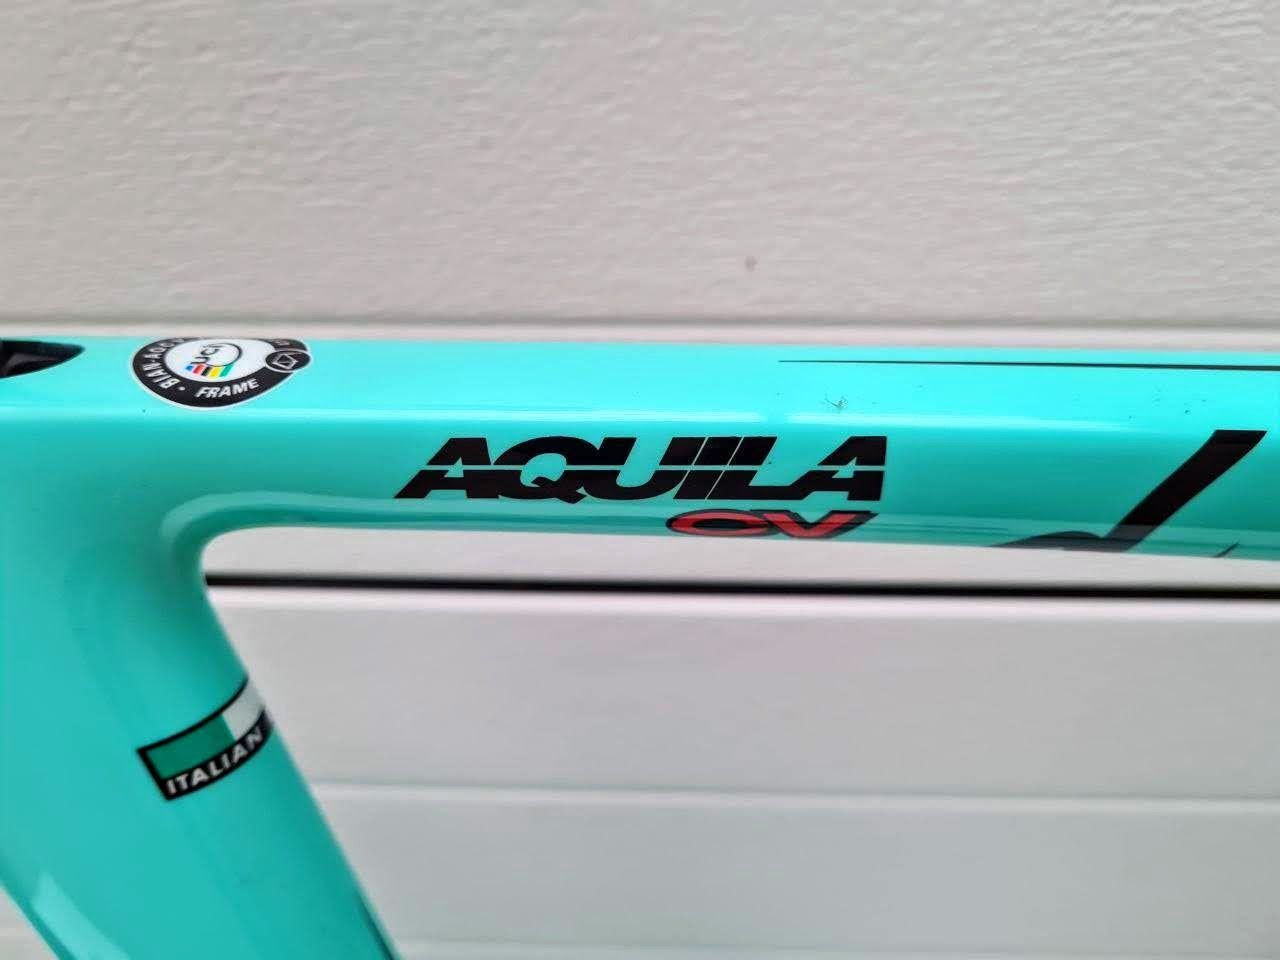 Шоссейный велосипед Bianchi Aquila CV Ultegra Di 2 (разделка)